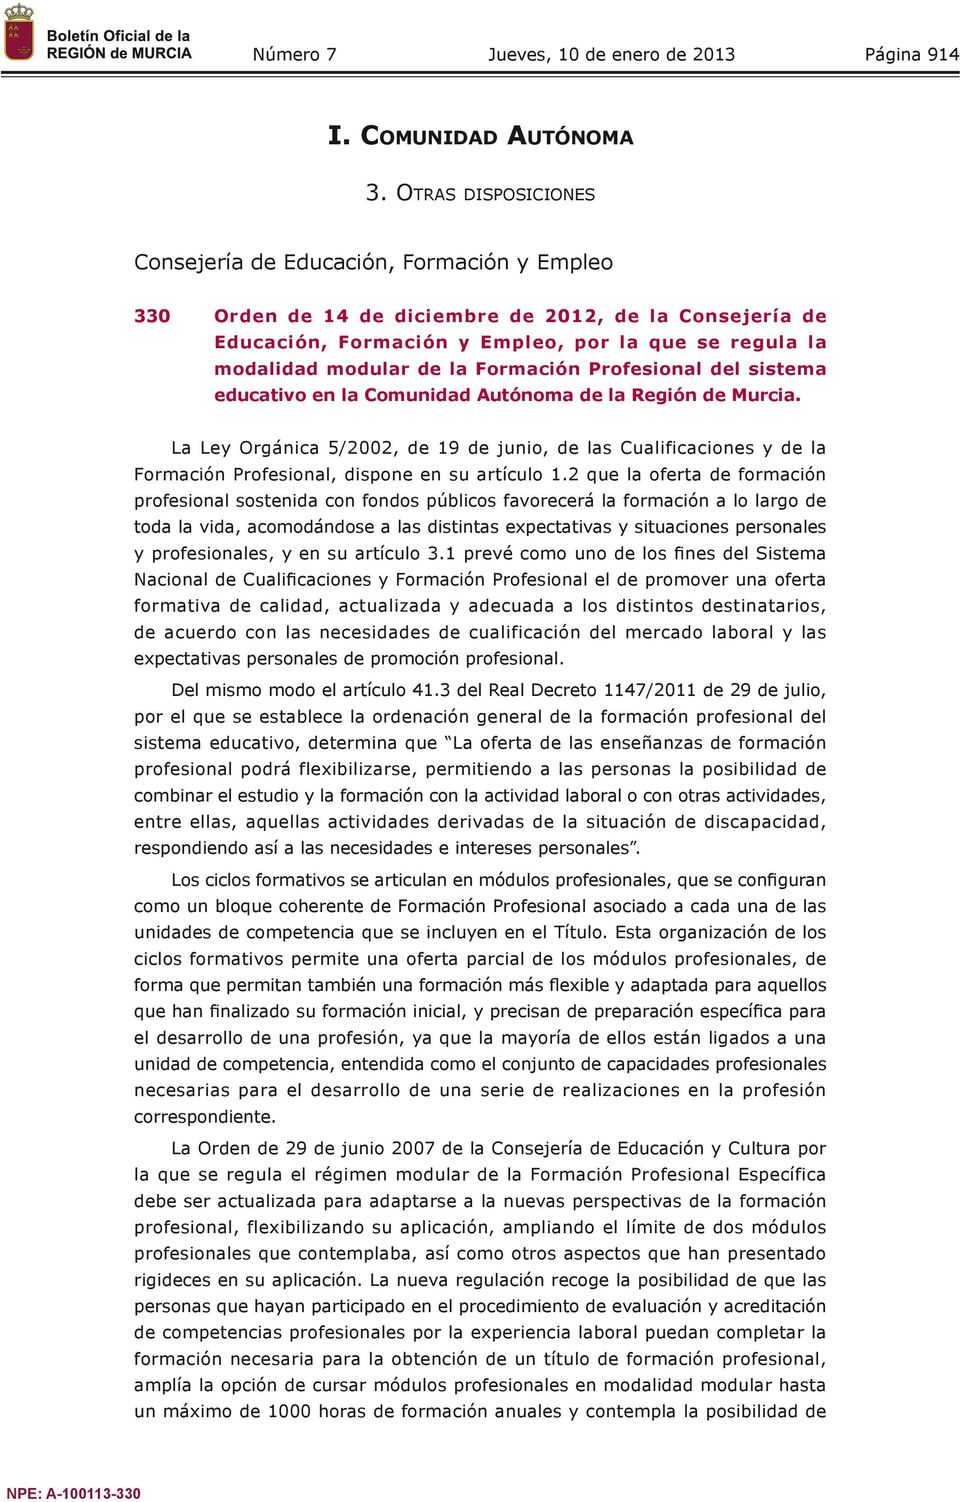 la Formación Profesional del sistema educativo en la Comunidad Autónoma de la Región de Murcia.